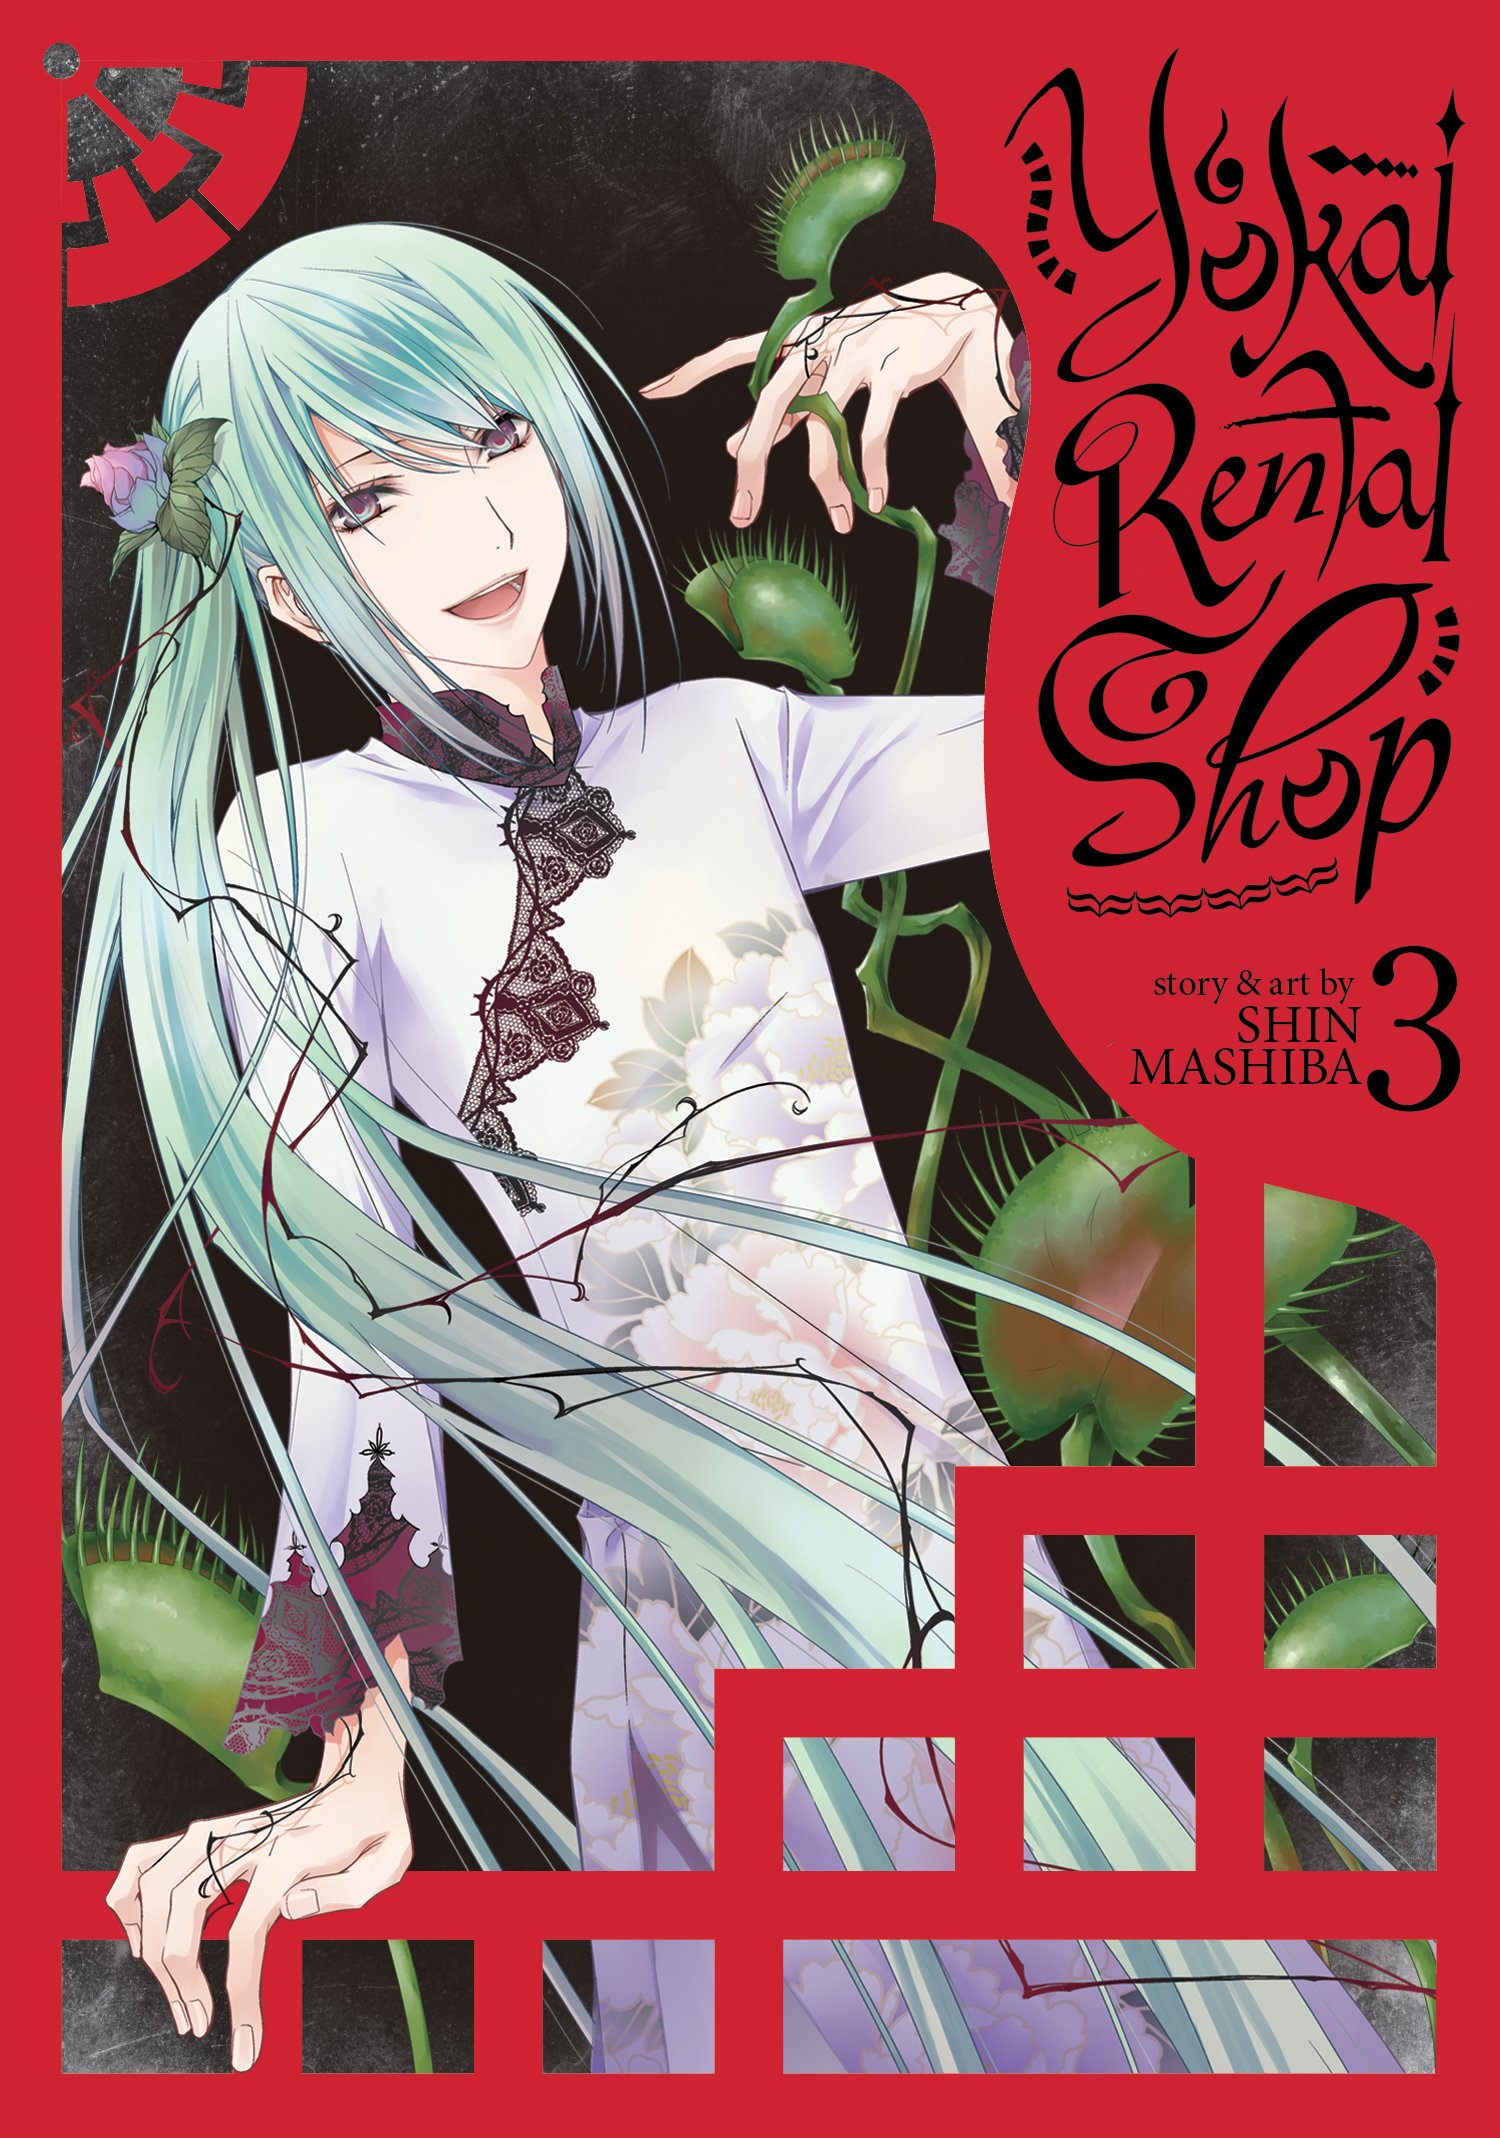 Yokai Rental Shop Vol. 3 | Shin Mashiba